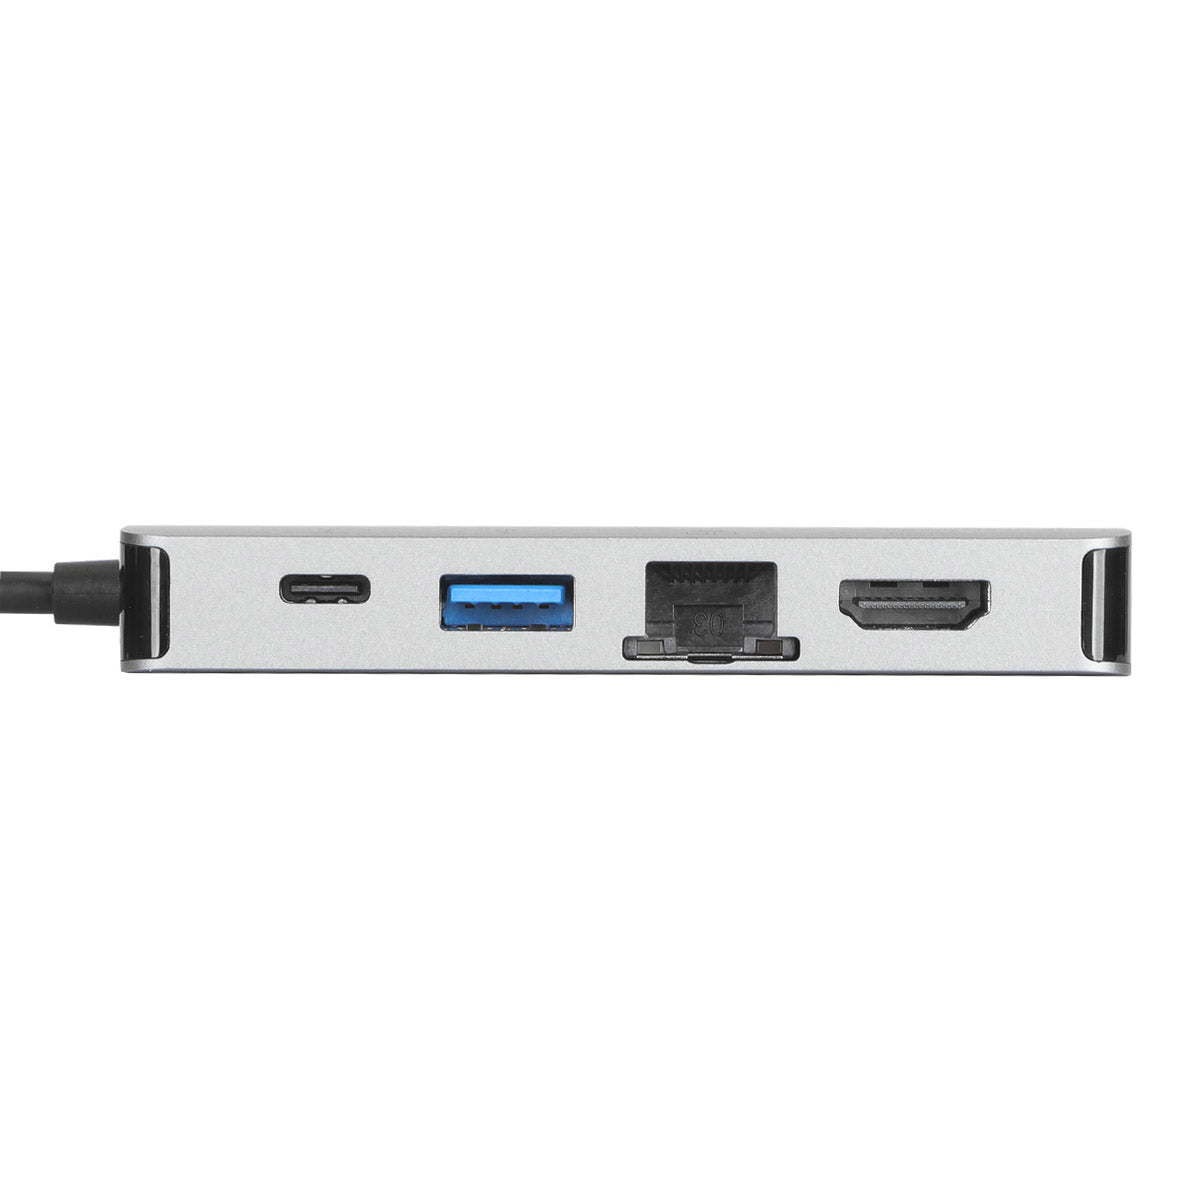 Targus DOCK419 USB-C Docking Station 擴充基座